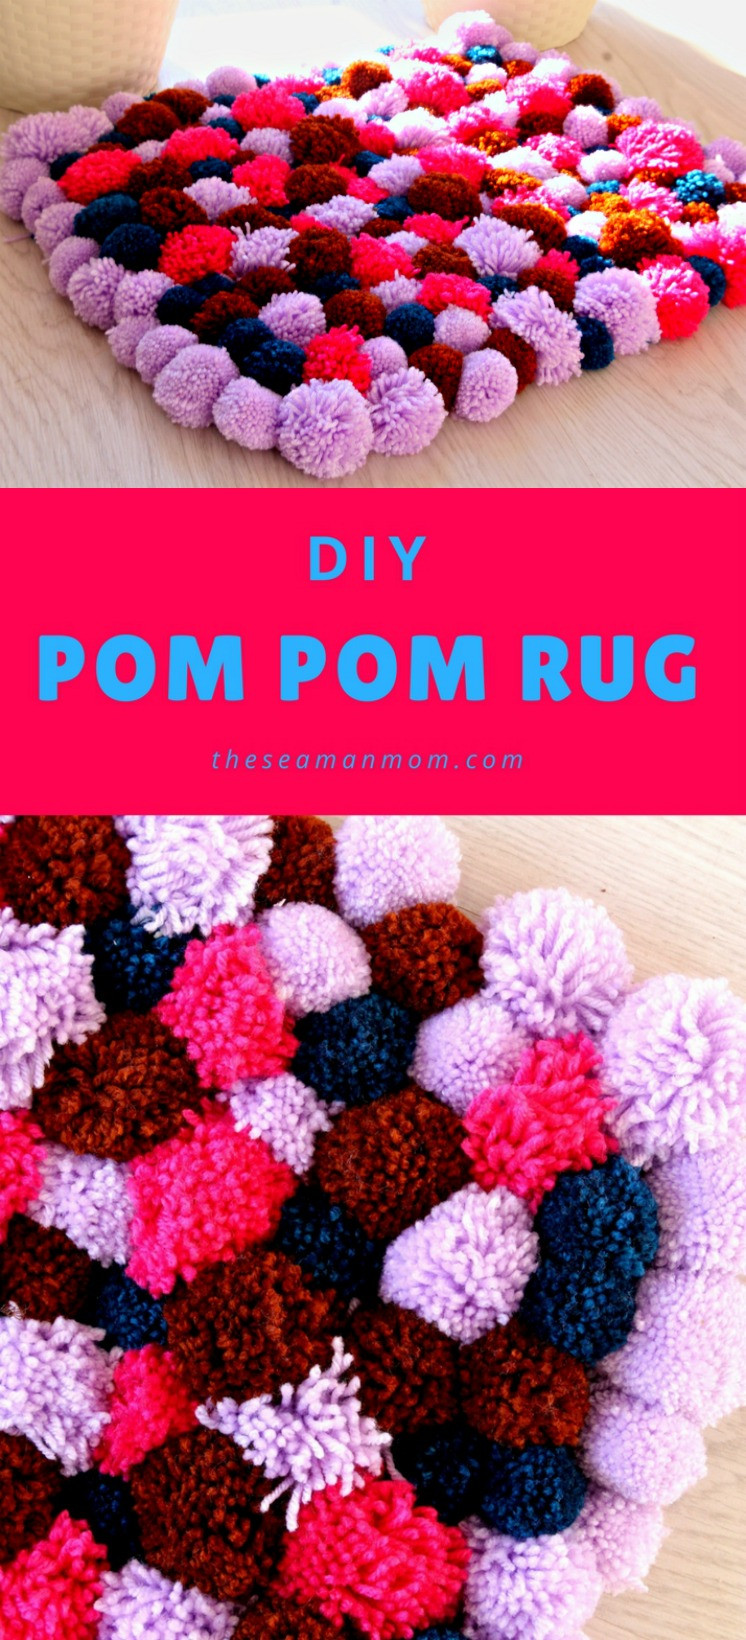 Best ideas about DIY Pom Pom Rug
. Save or Pin DIY Pom Pom Rug Now.